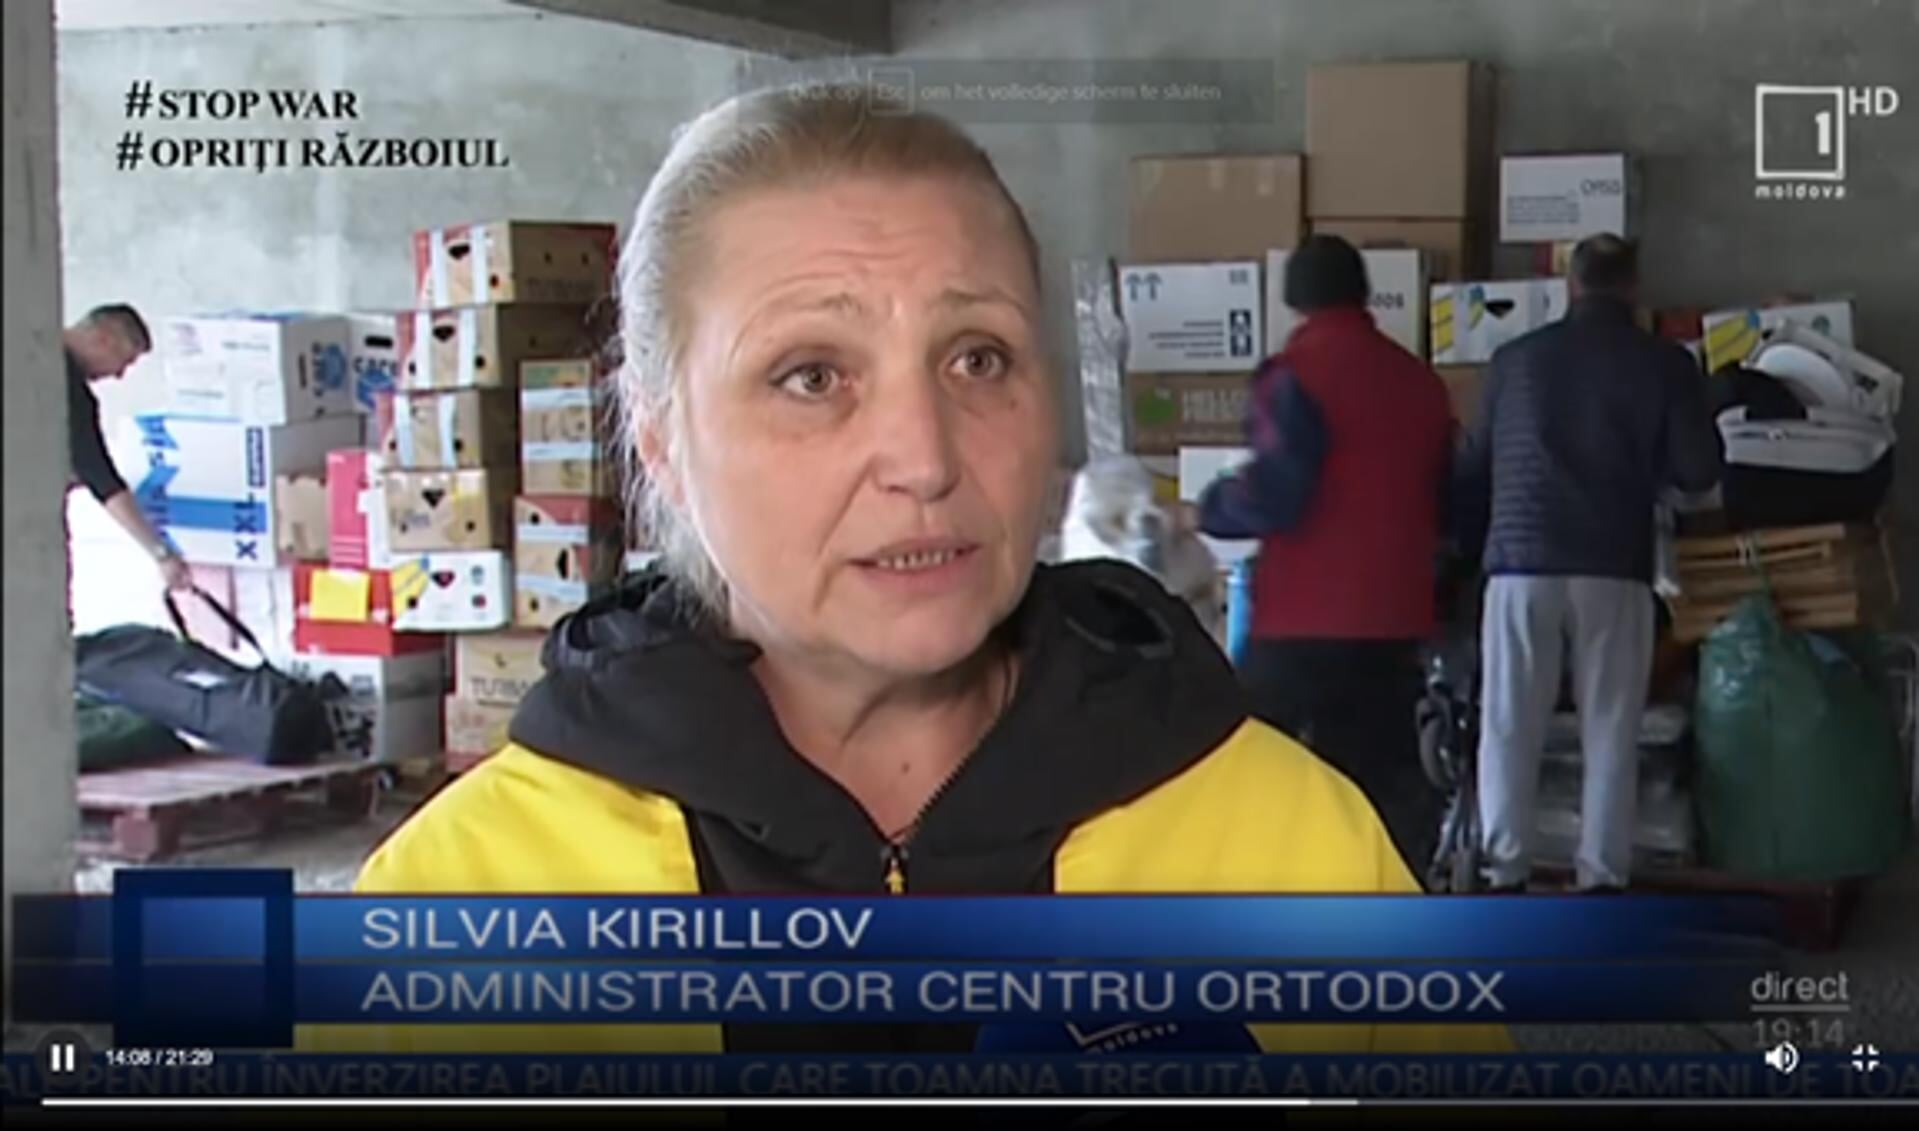 De Moldavische televisie kwam langs om verslag te doen van het hulpkonvooi uit Nederland en interviewde Silvia